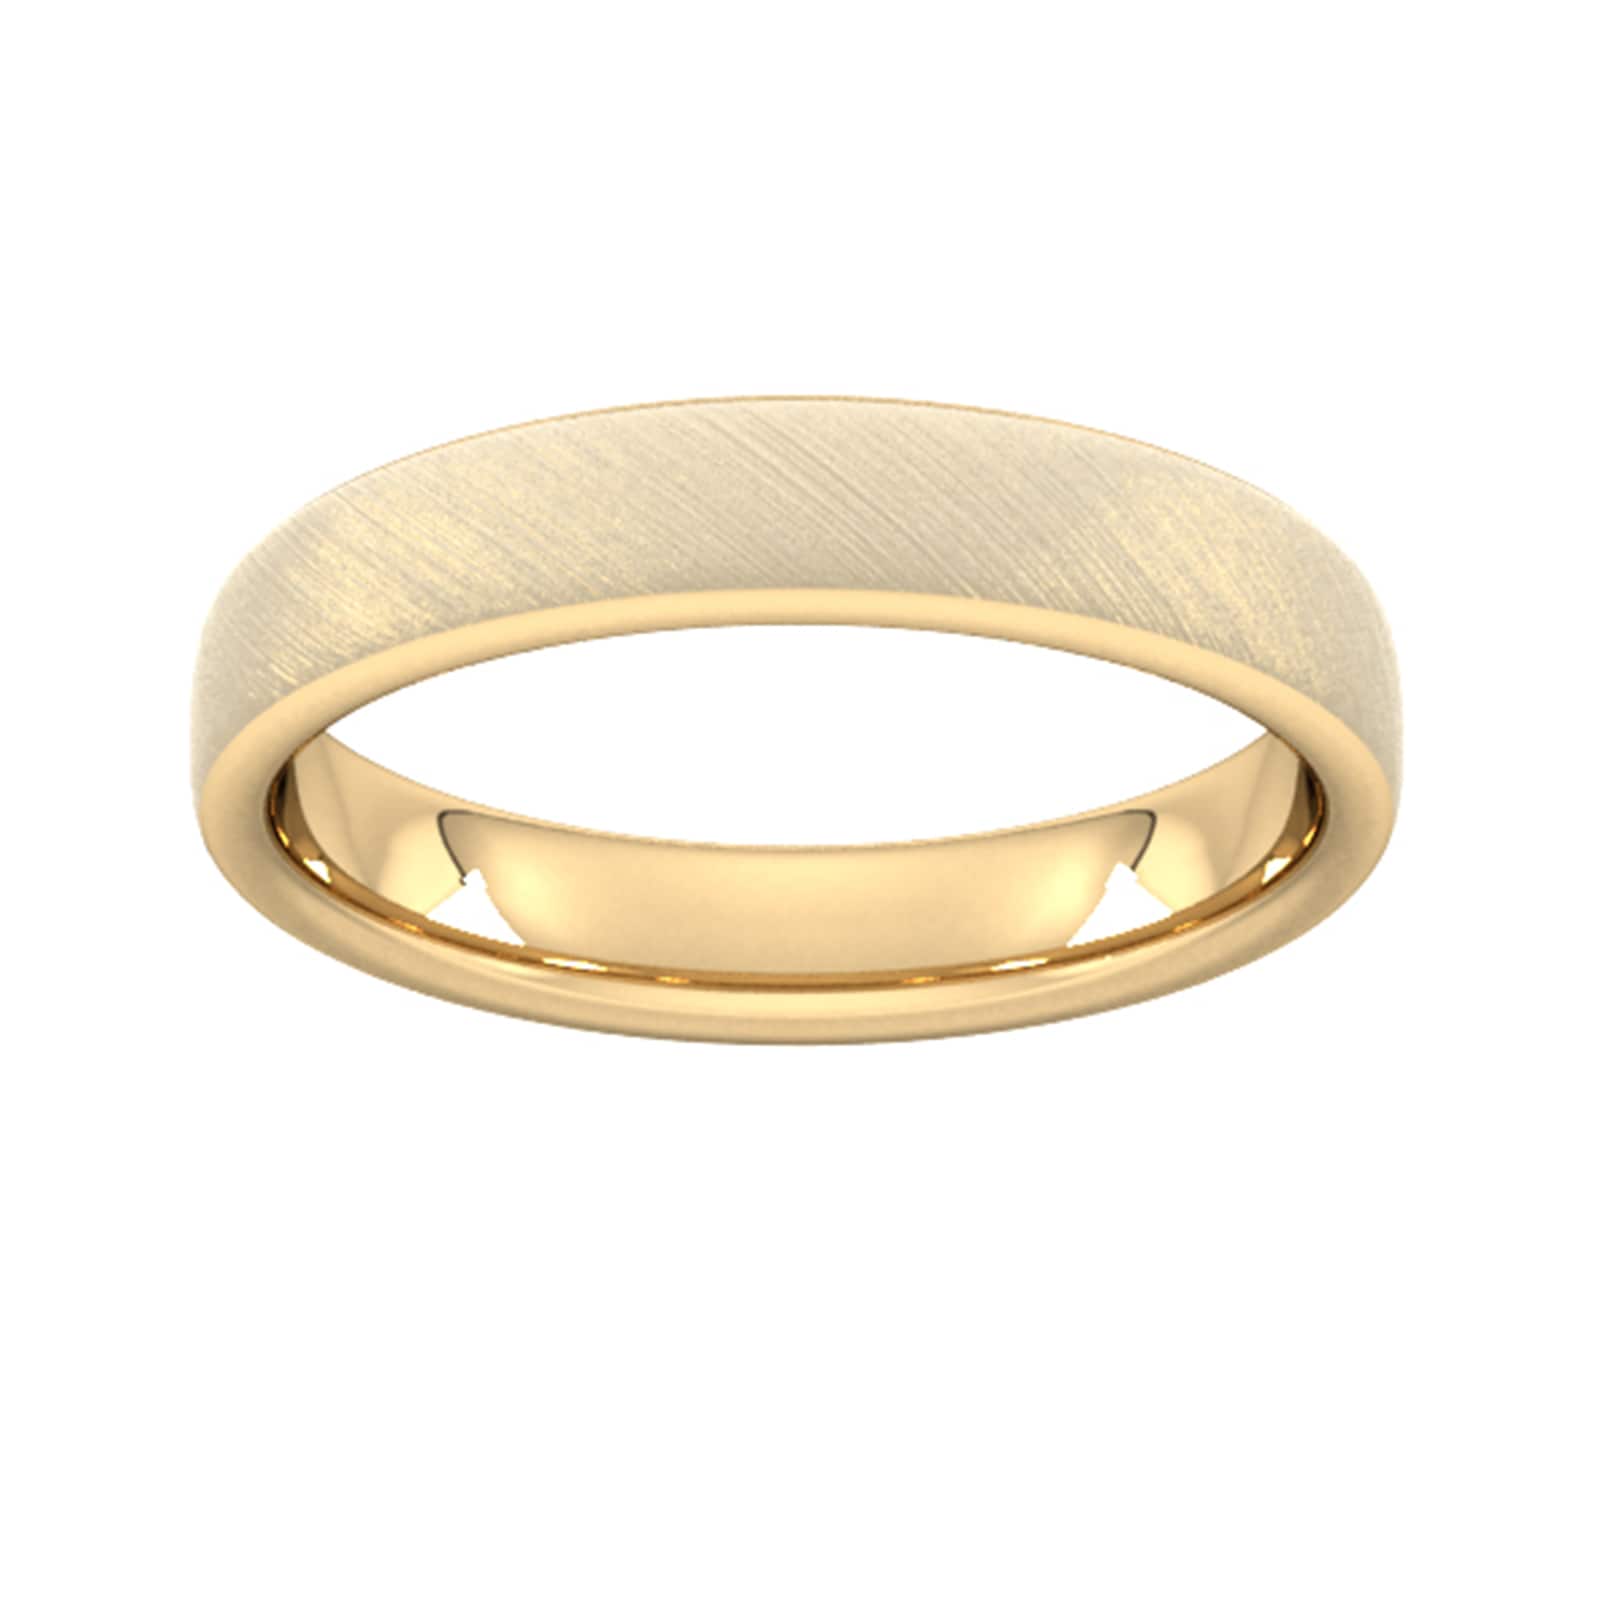 4mm Flat Court Heavy Diagonal Matt Finish Wedding Ring In 18 Carat Yellow Gold - Ring Size J